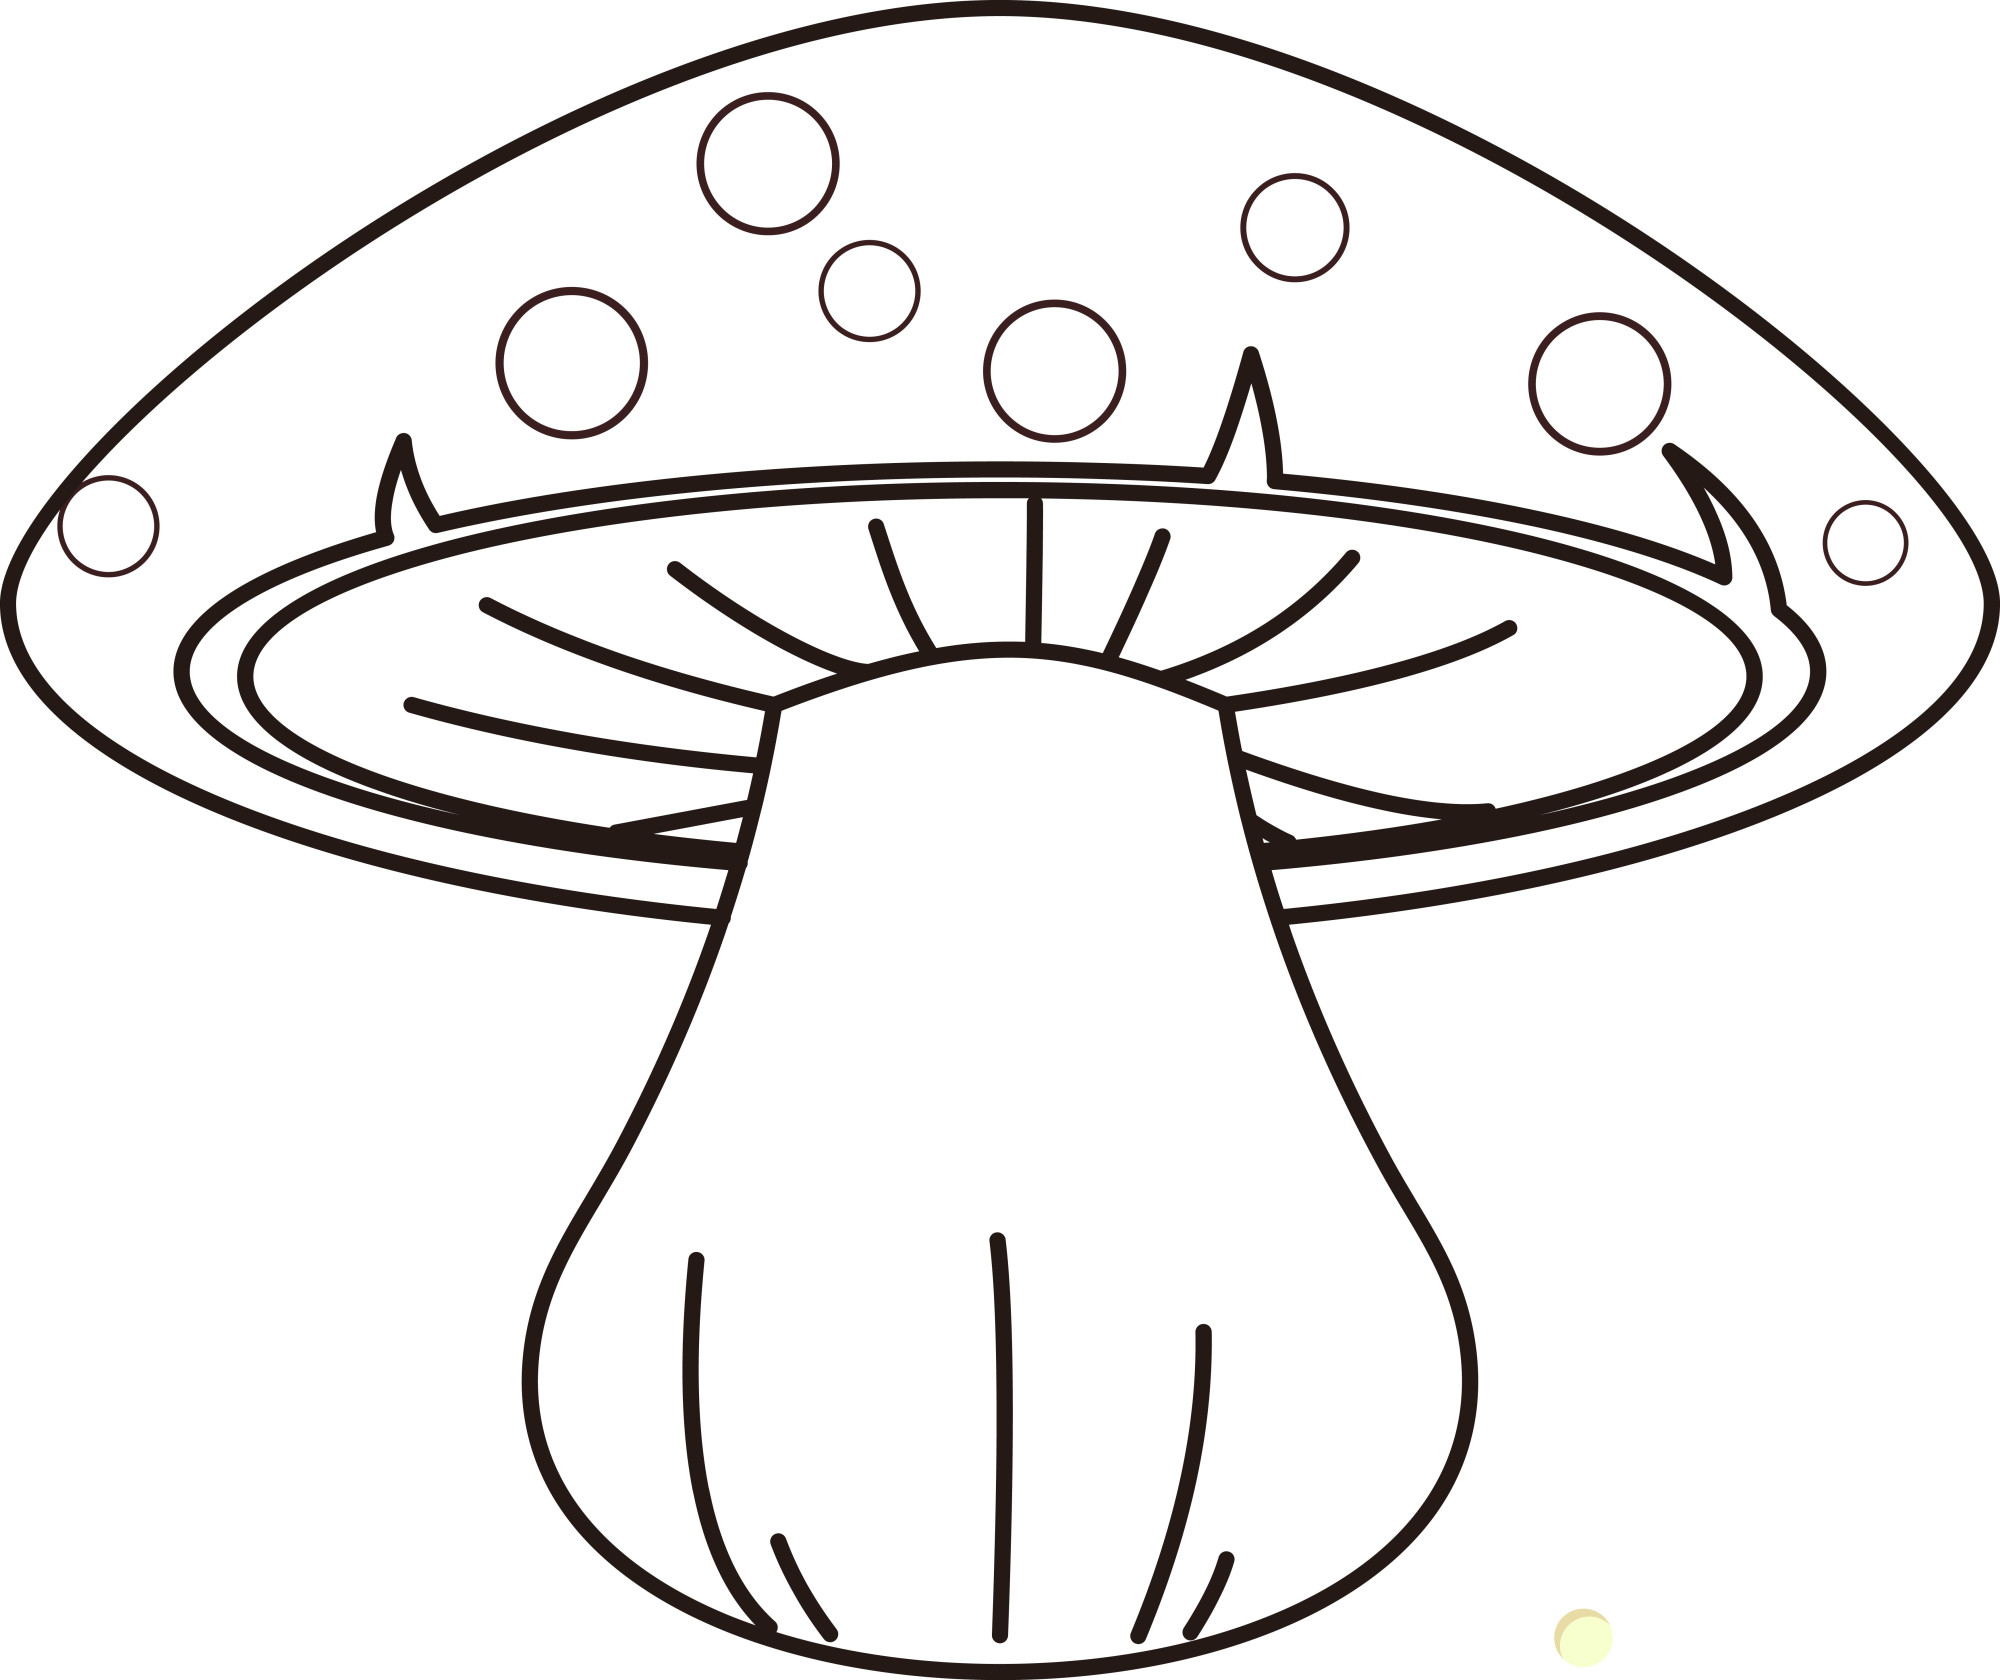 Раскраска для детей: красный гриб с красивой шляпкой